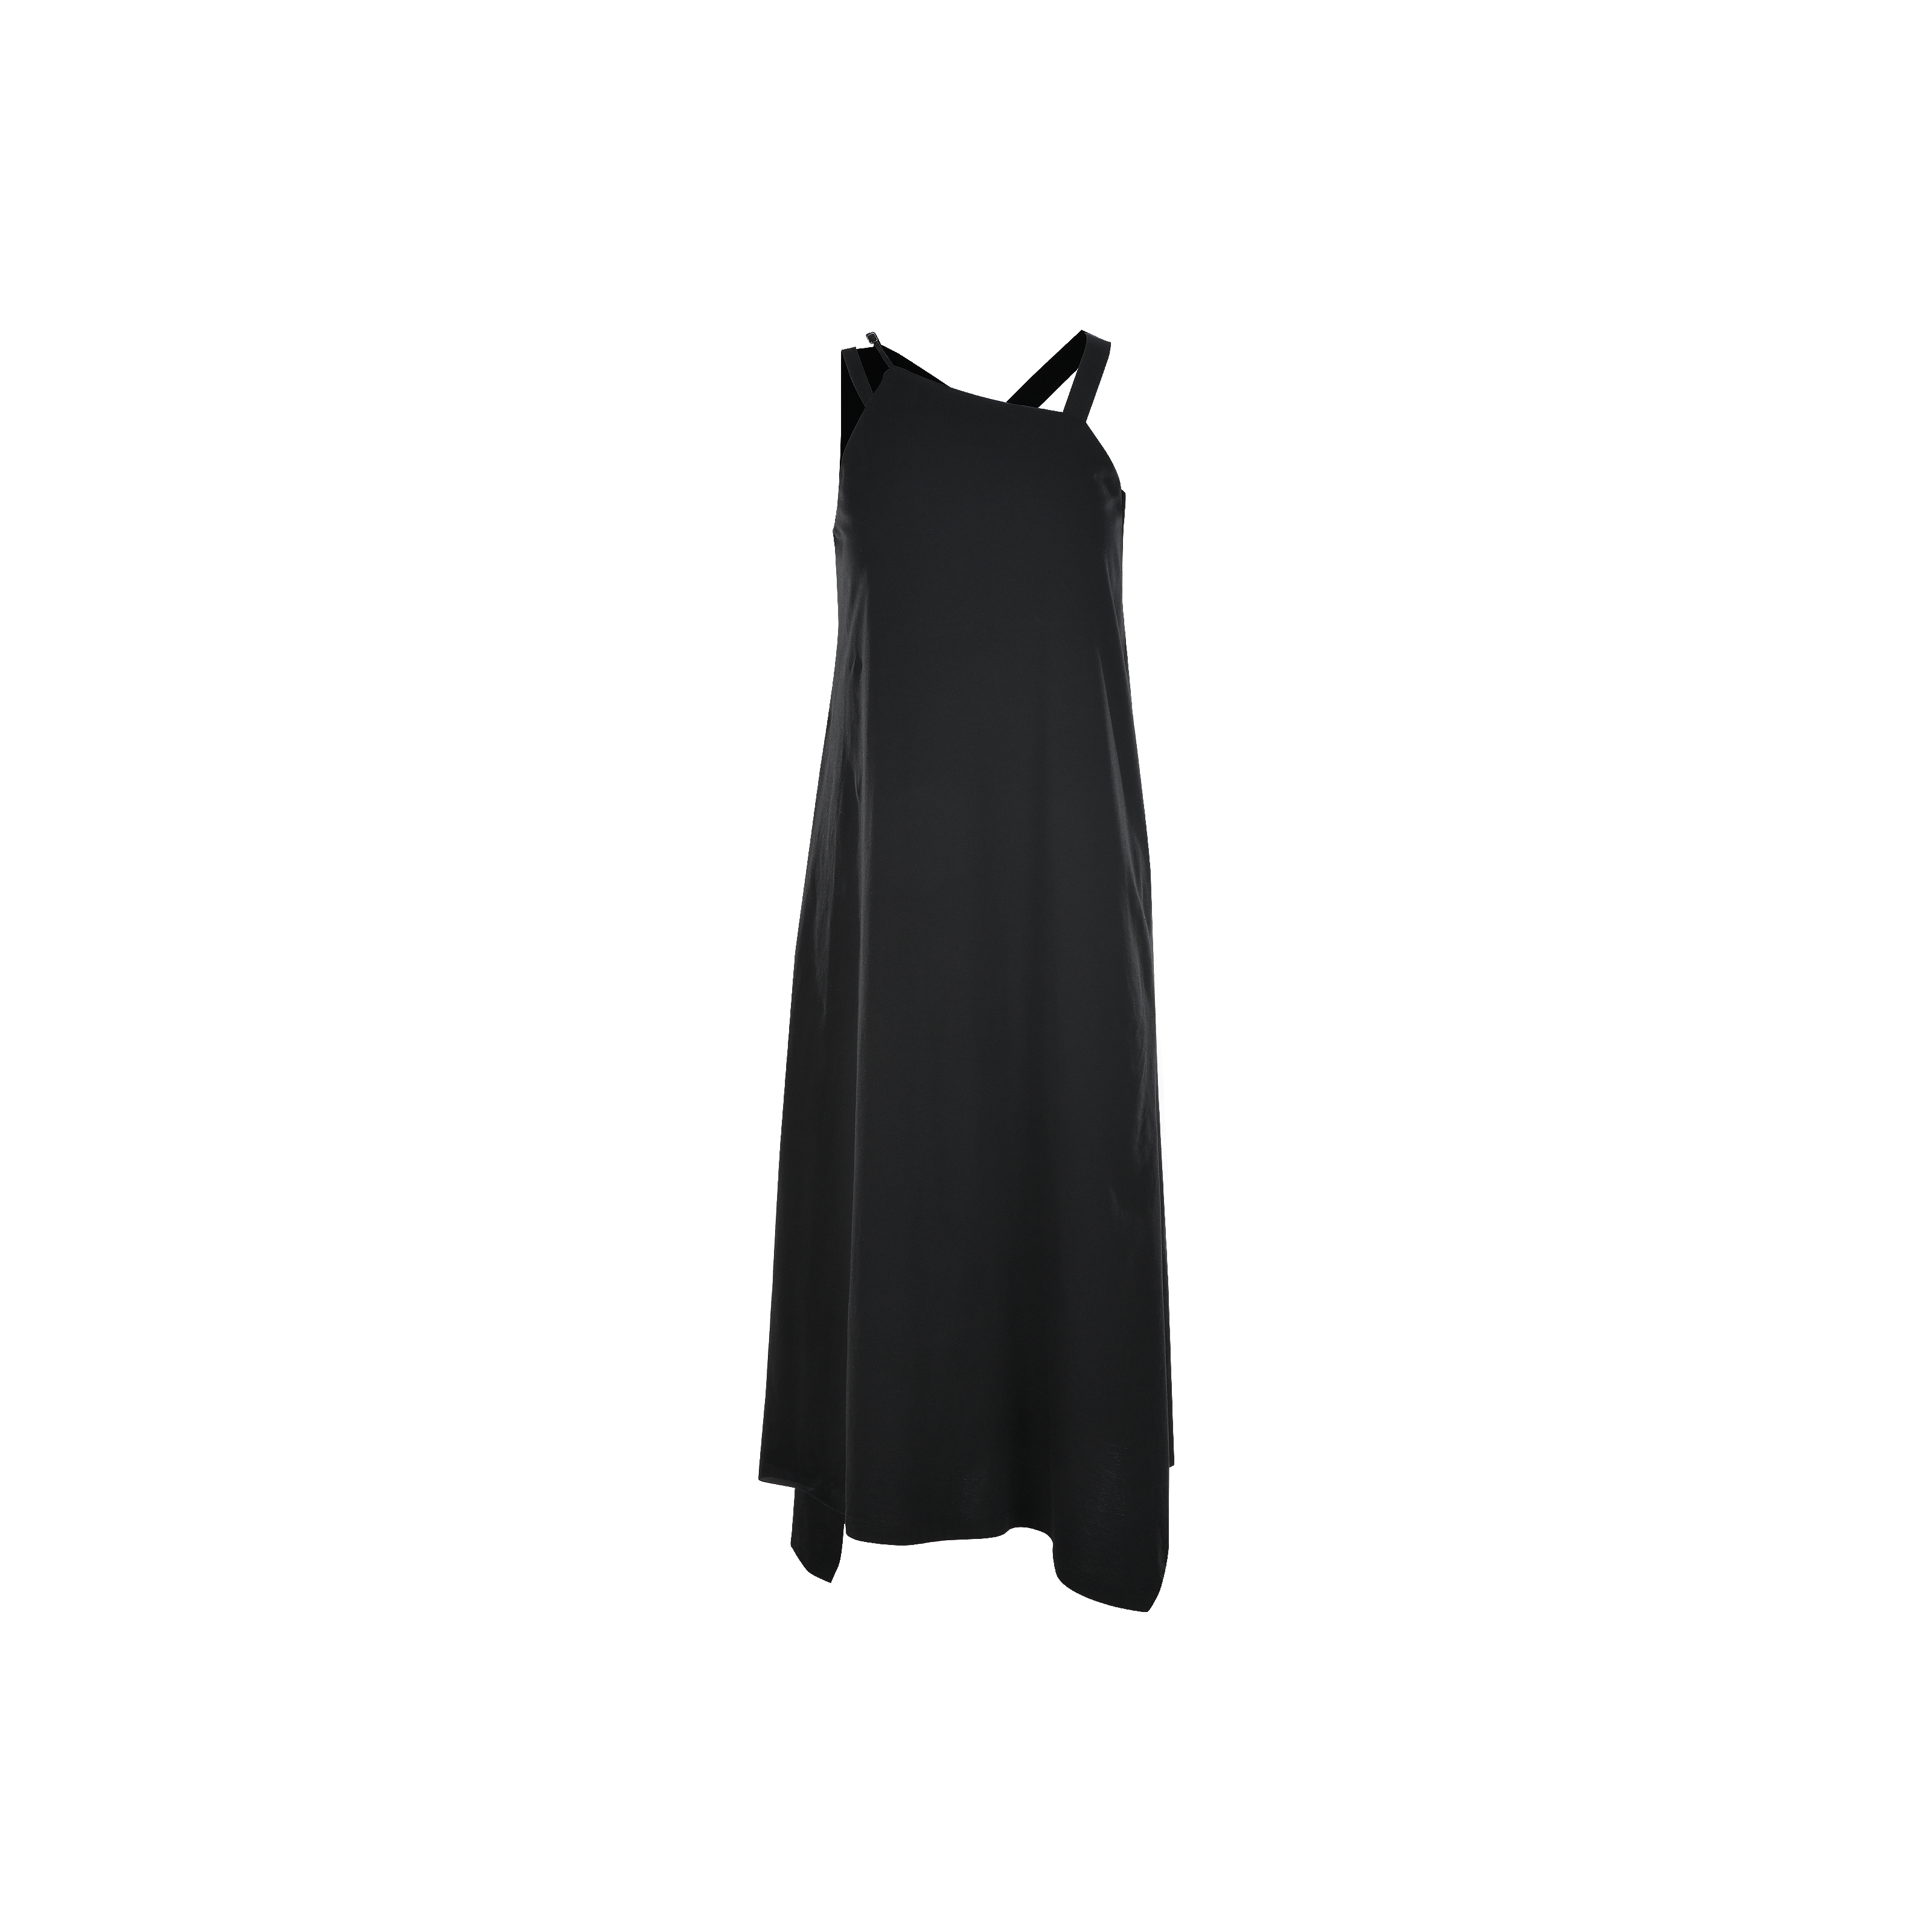 Triton Dress in Black